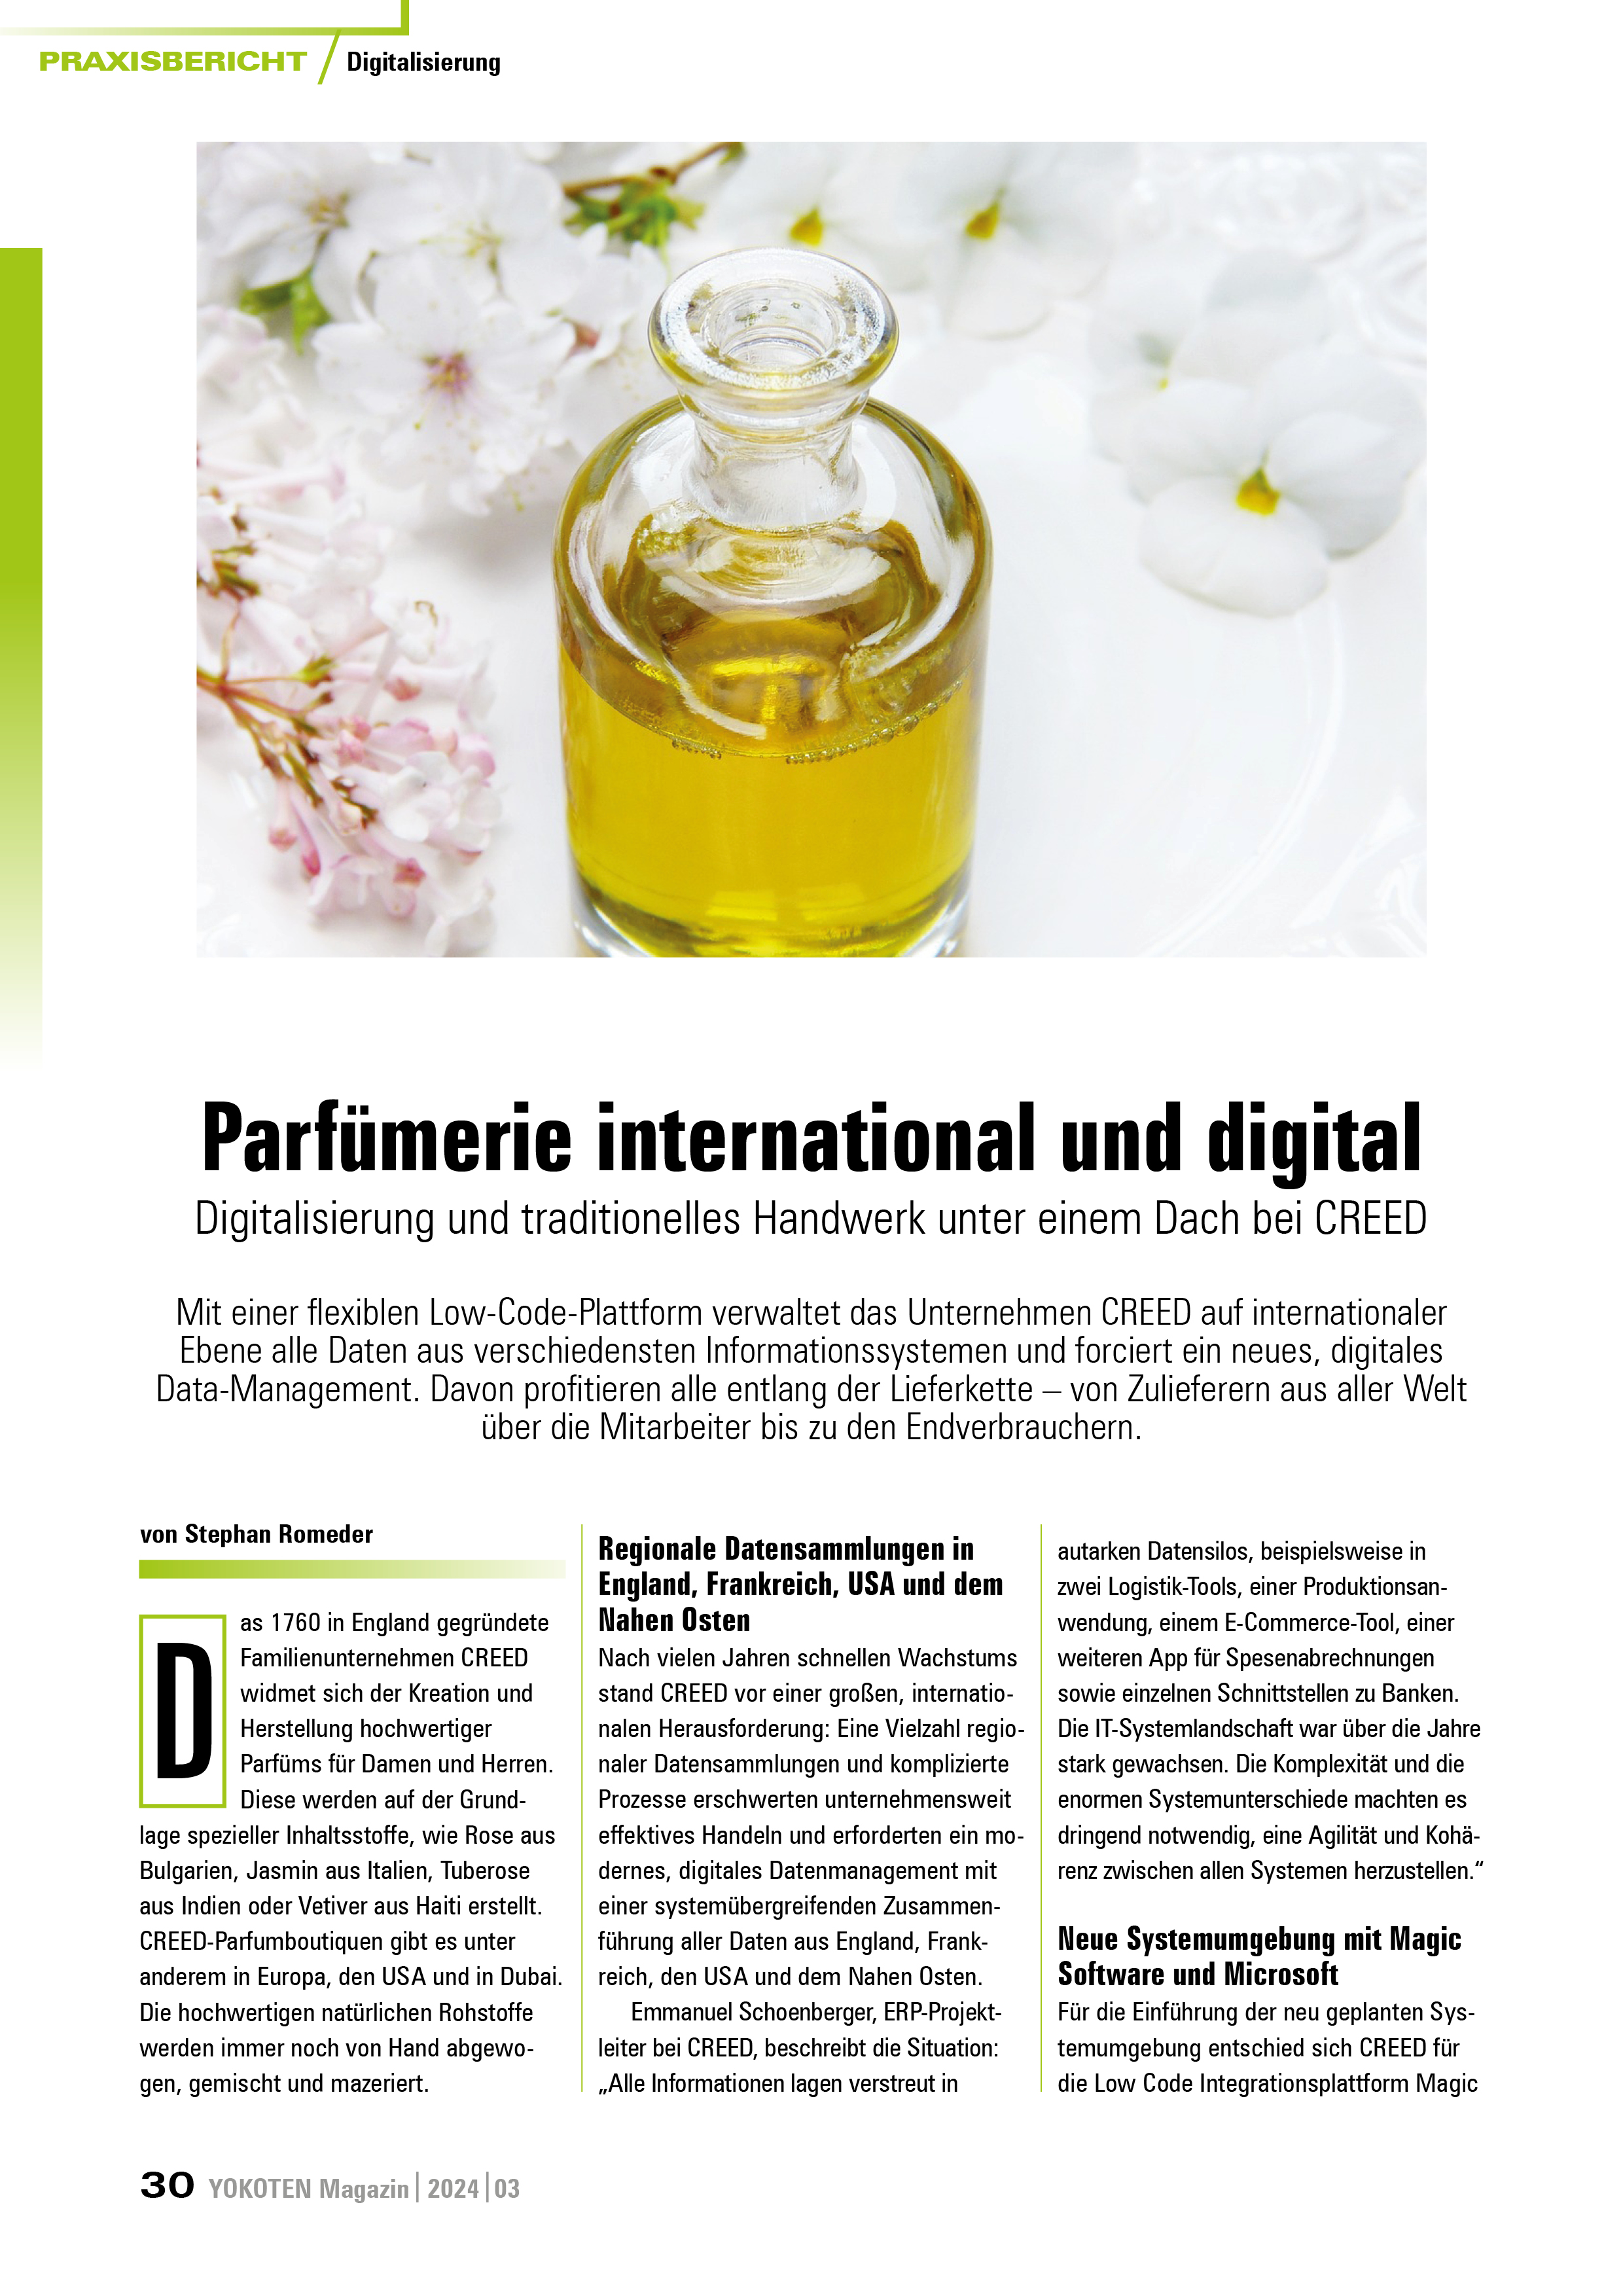 Parfümerie international und digital - Artikel aus Fachmagazin YOKOTEN 2024-03